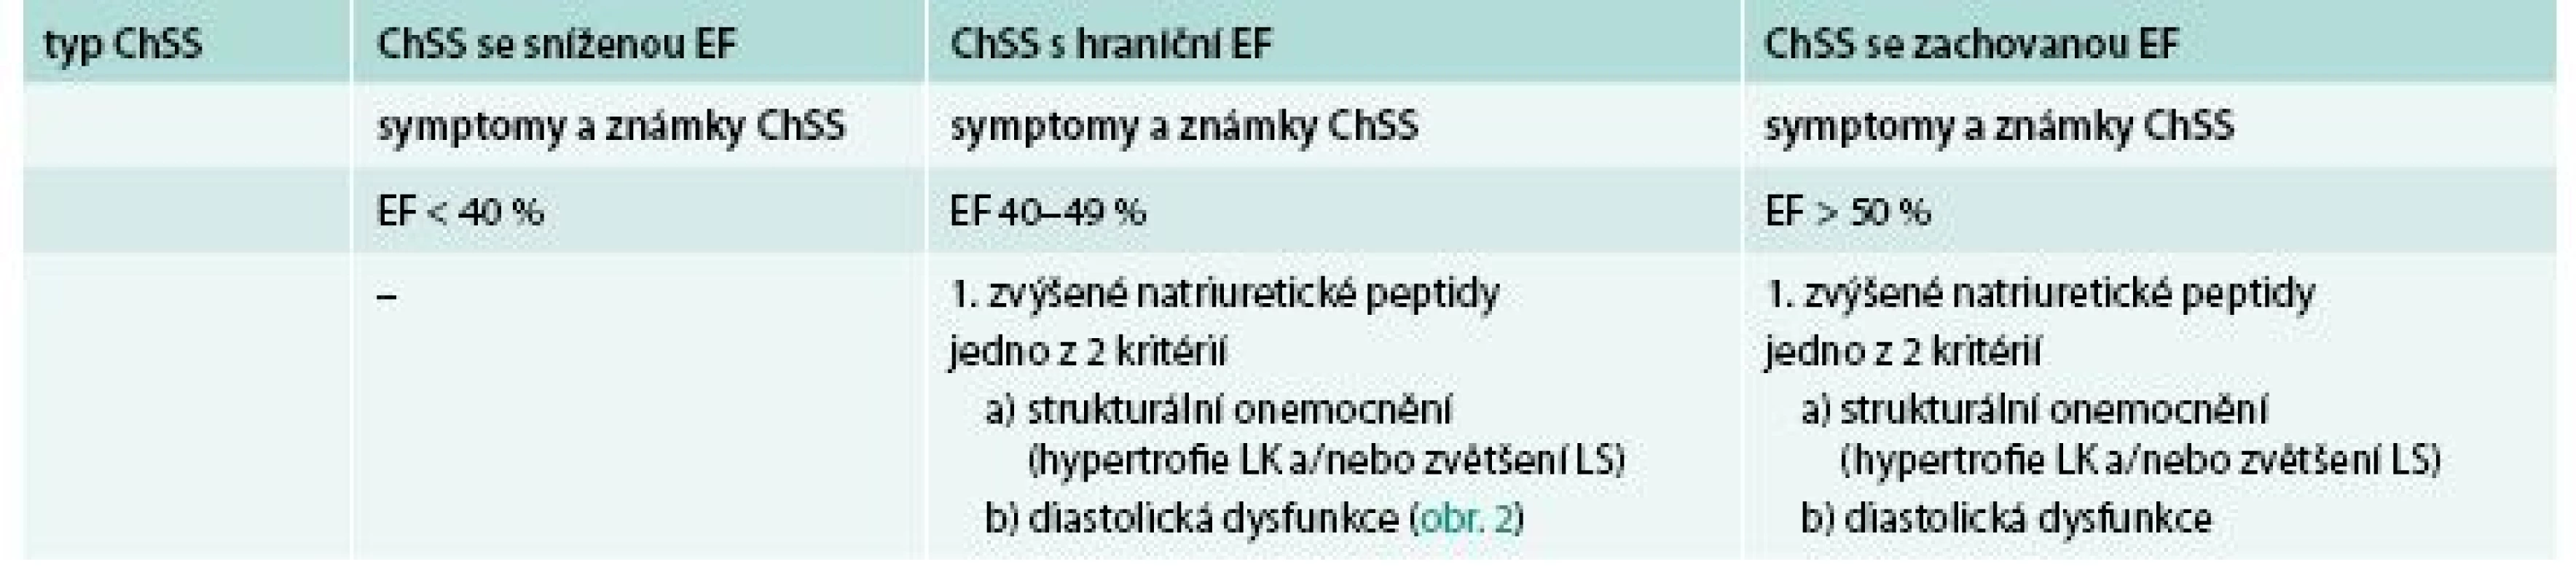 Co musí být splněno pro diagnózu chronického srdečního selhání (ChSS) se zachovanou ejekční frakcí (EF)